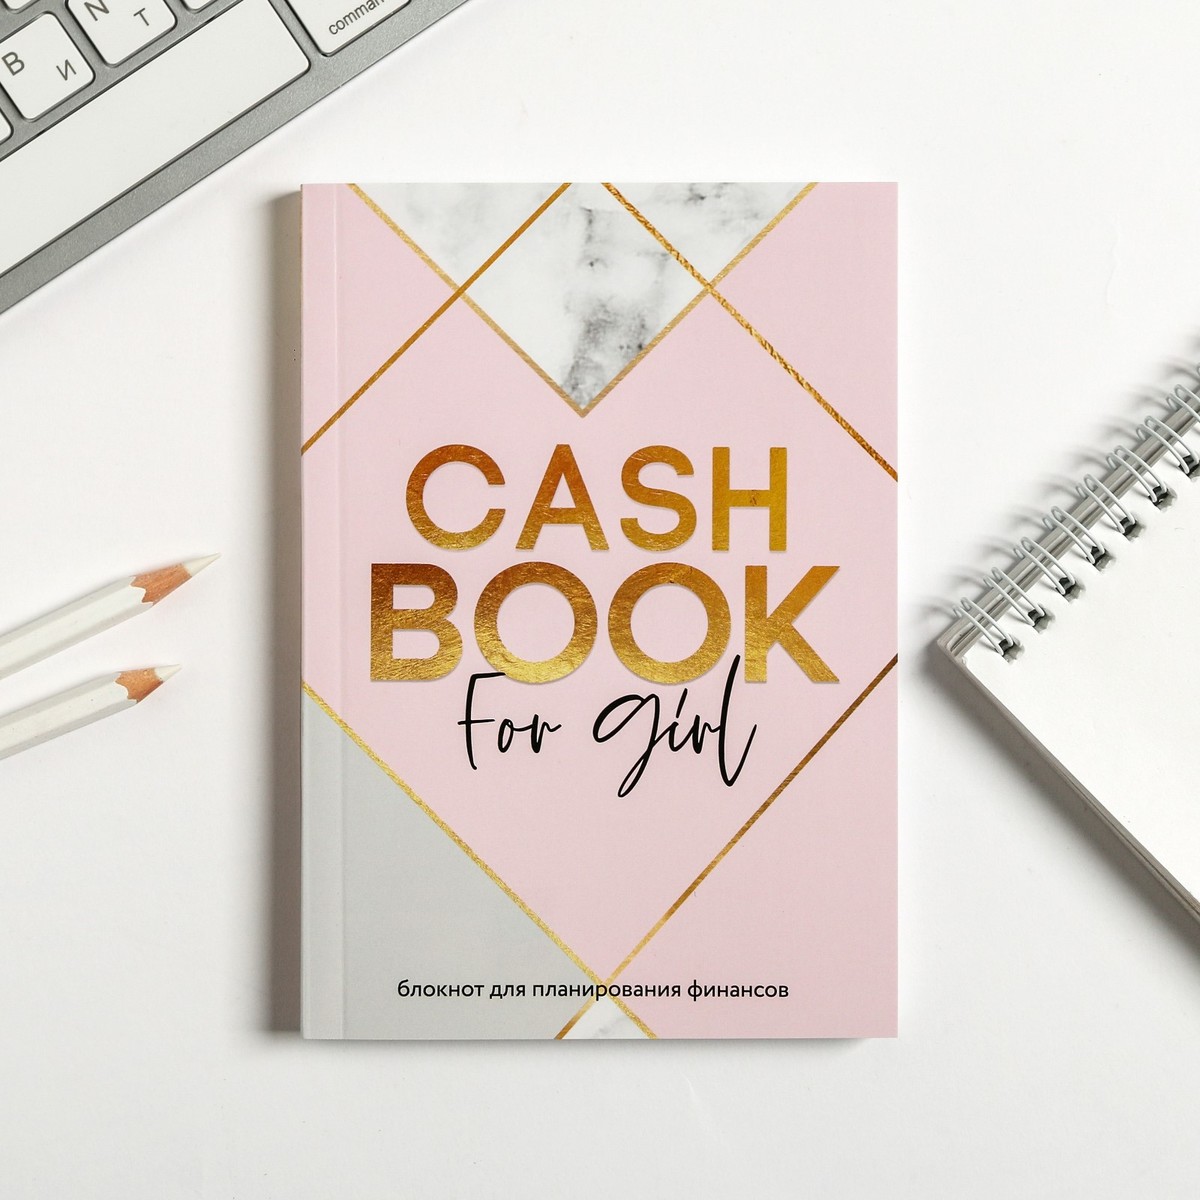 Умный блокнот cashbook а6, 68 листов cashbook for girl умный блокнот для планирования финансов